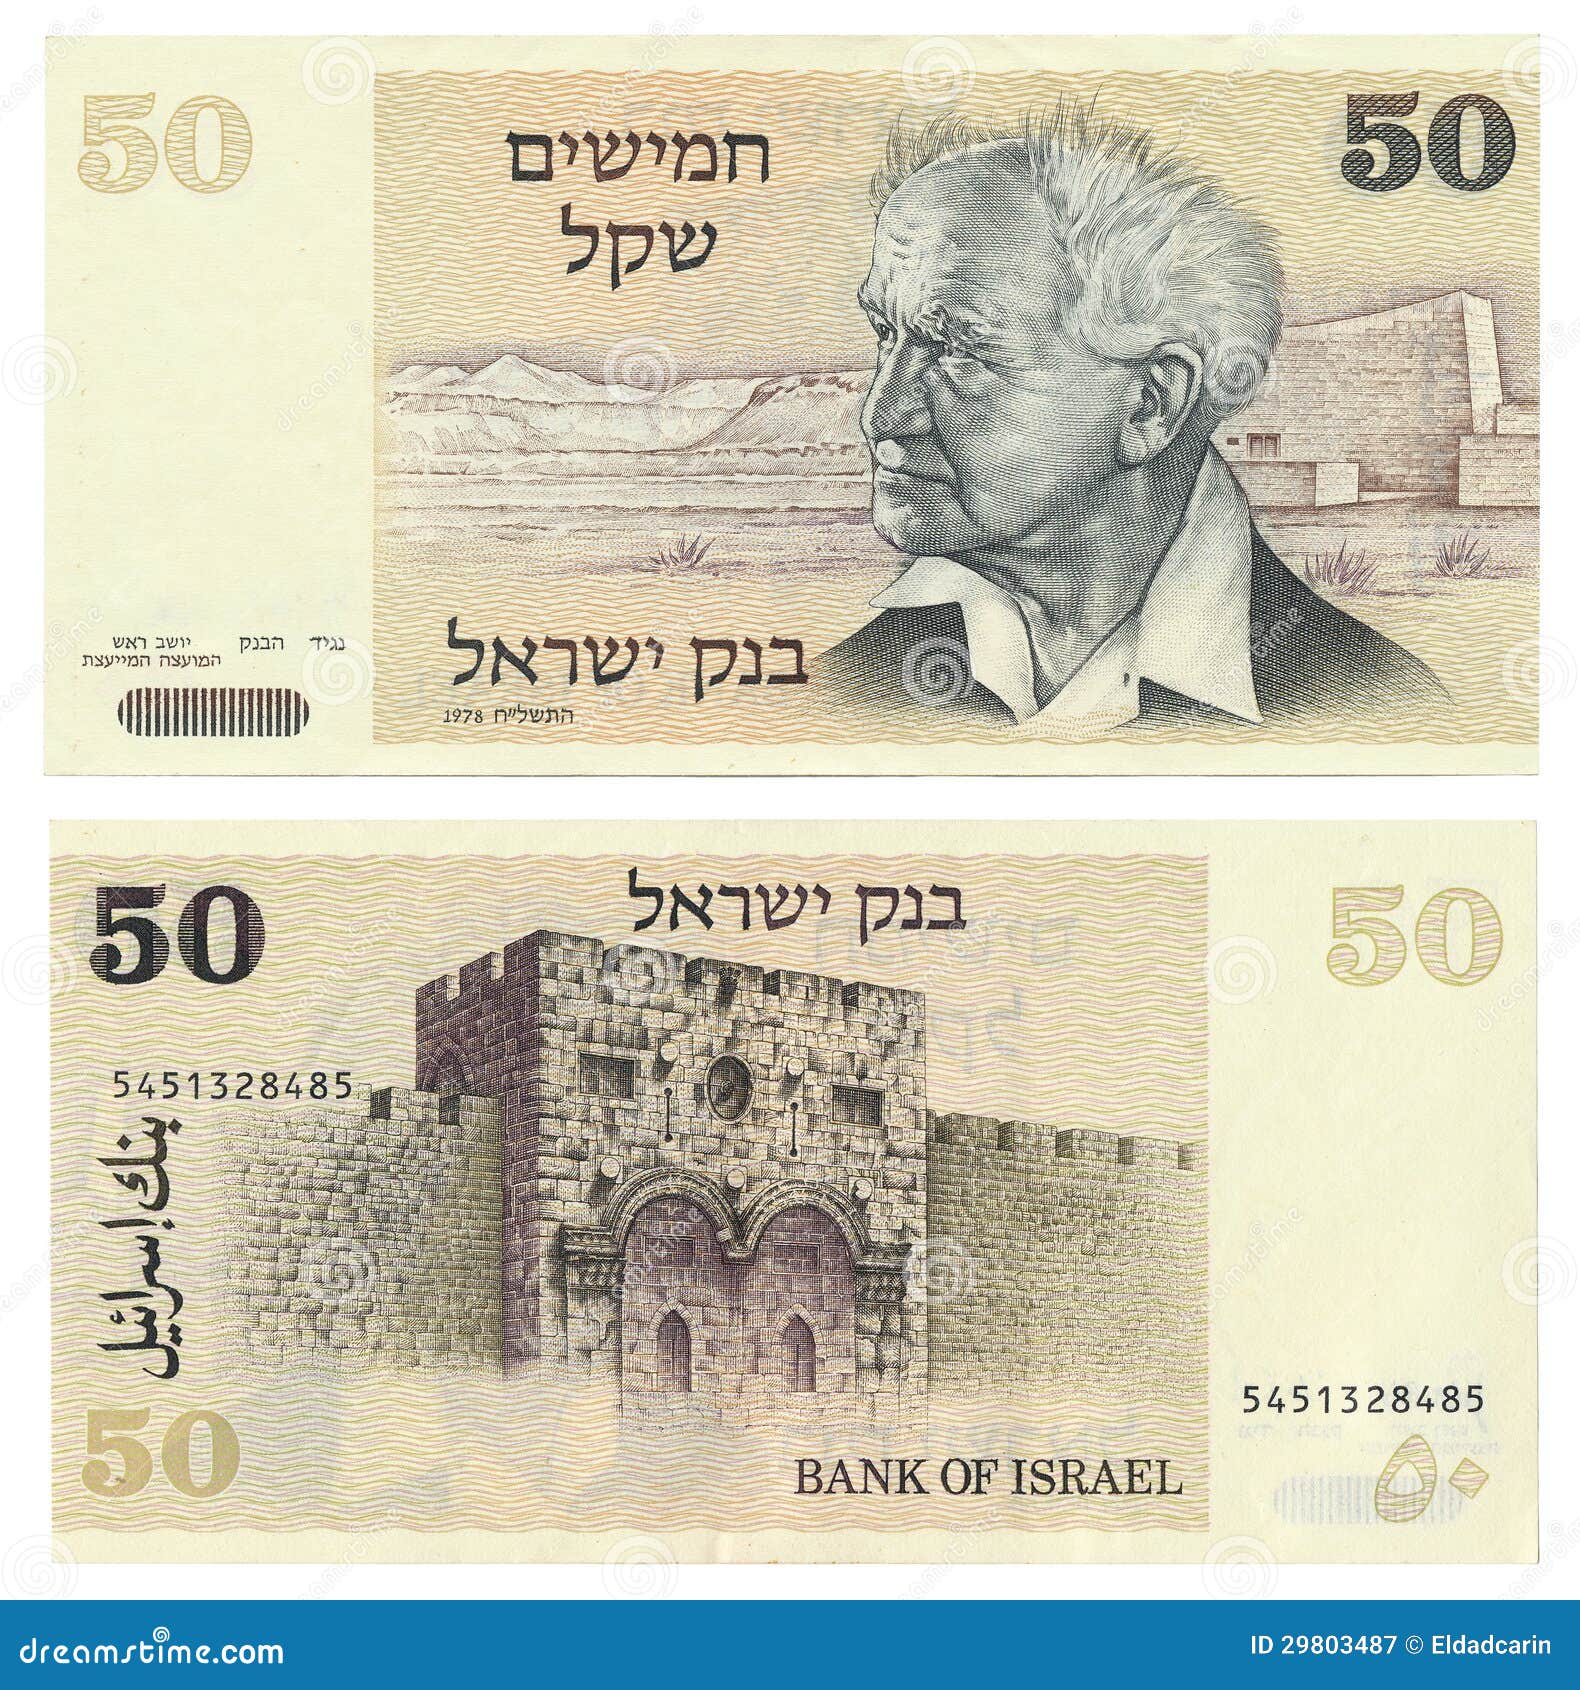 Israelischer Schekel holt Kriegsverlust auf - Notenbank